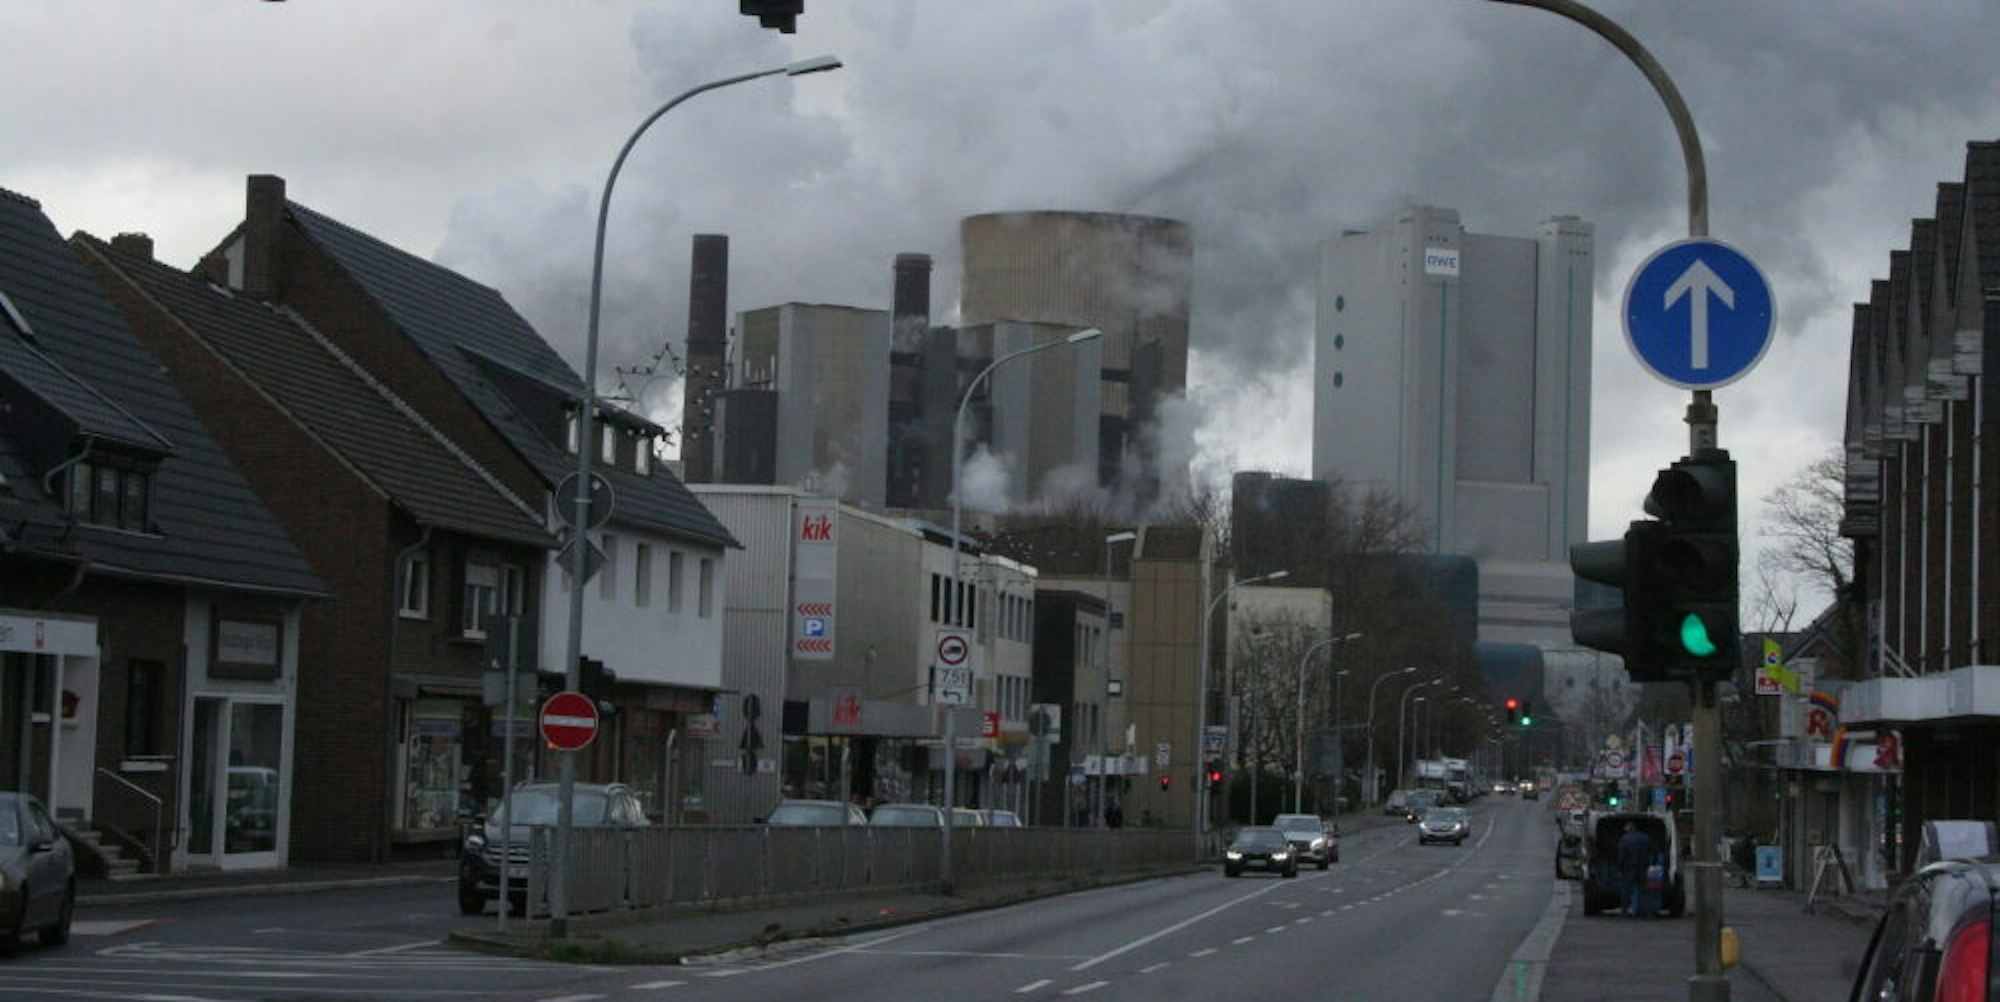 Allein der BoA-Block (im Bild rechts) am Kraftwerk Niederaußem könnte laut RWE ganz Köln mit Strom versorgen.